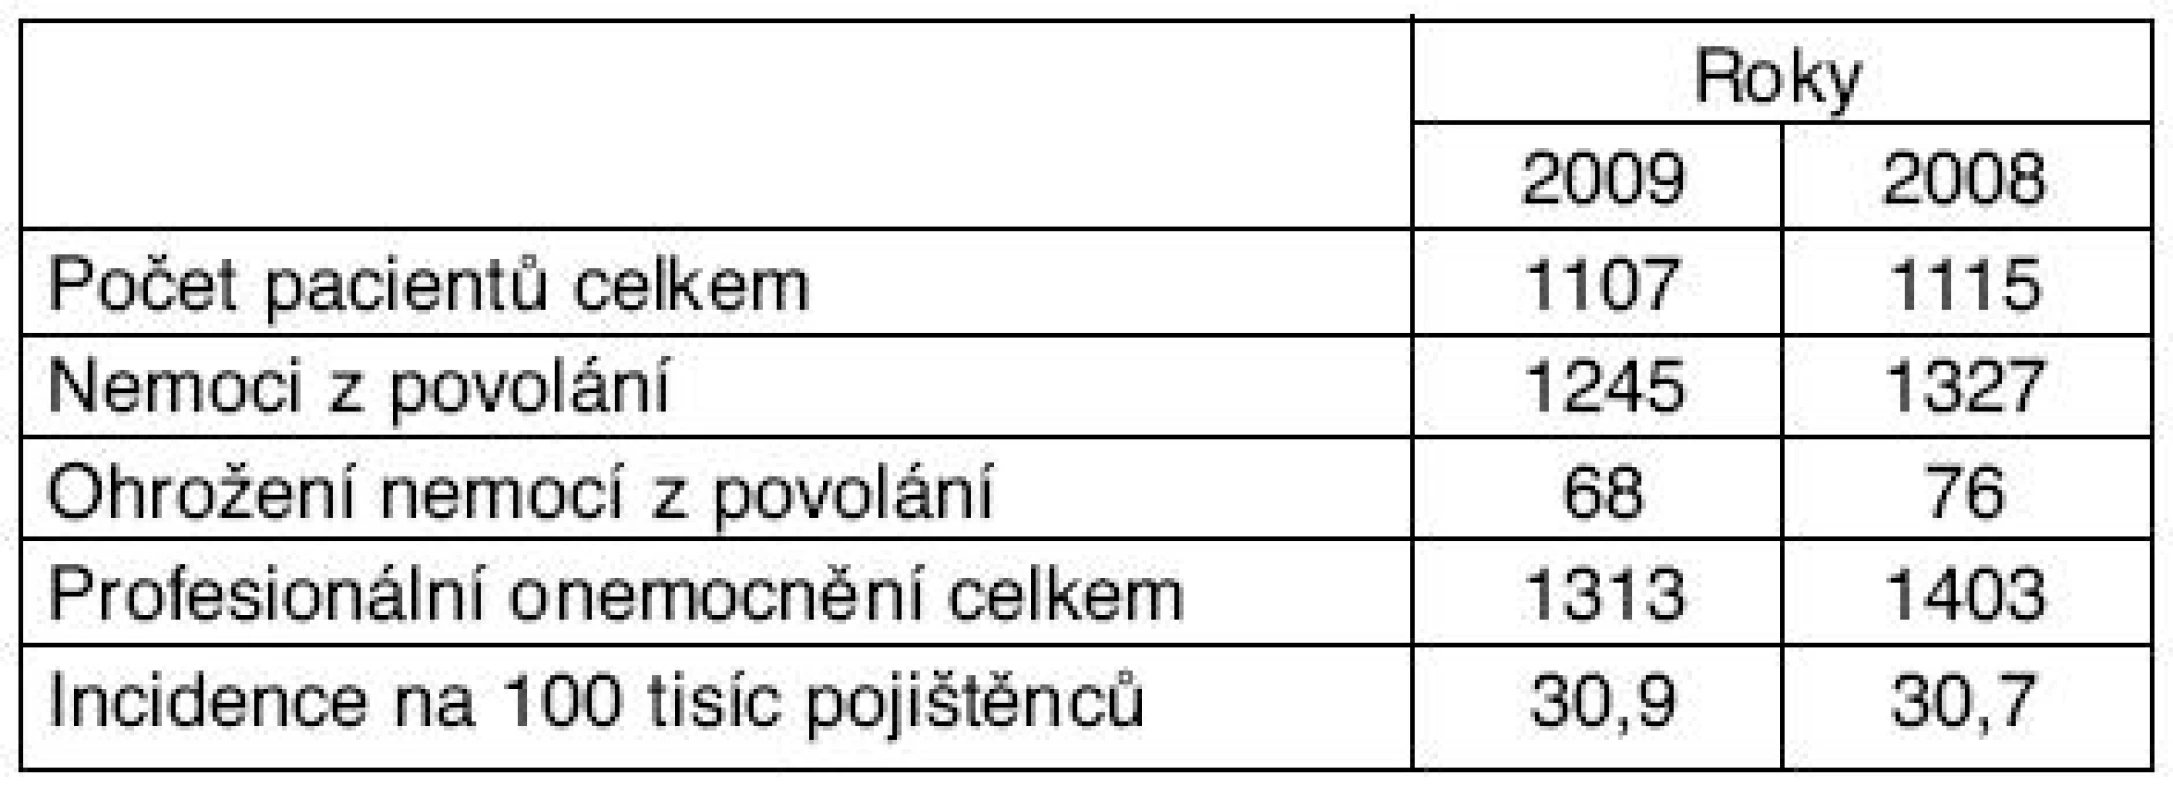 Profesionální onemocnění hlášená v České republice v letech 2008 a 2009